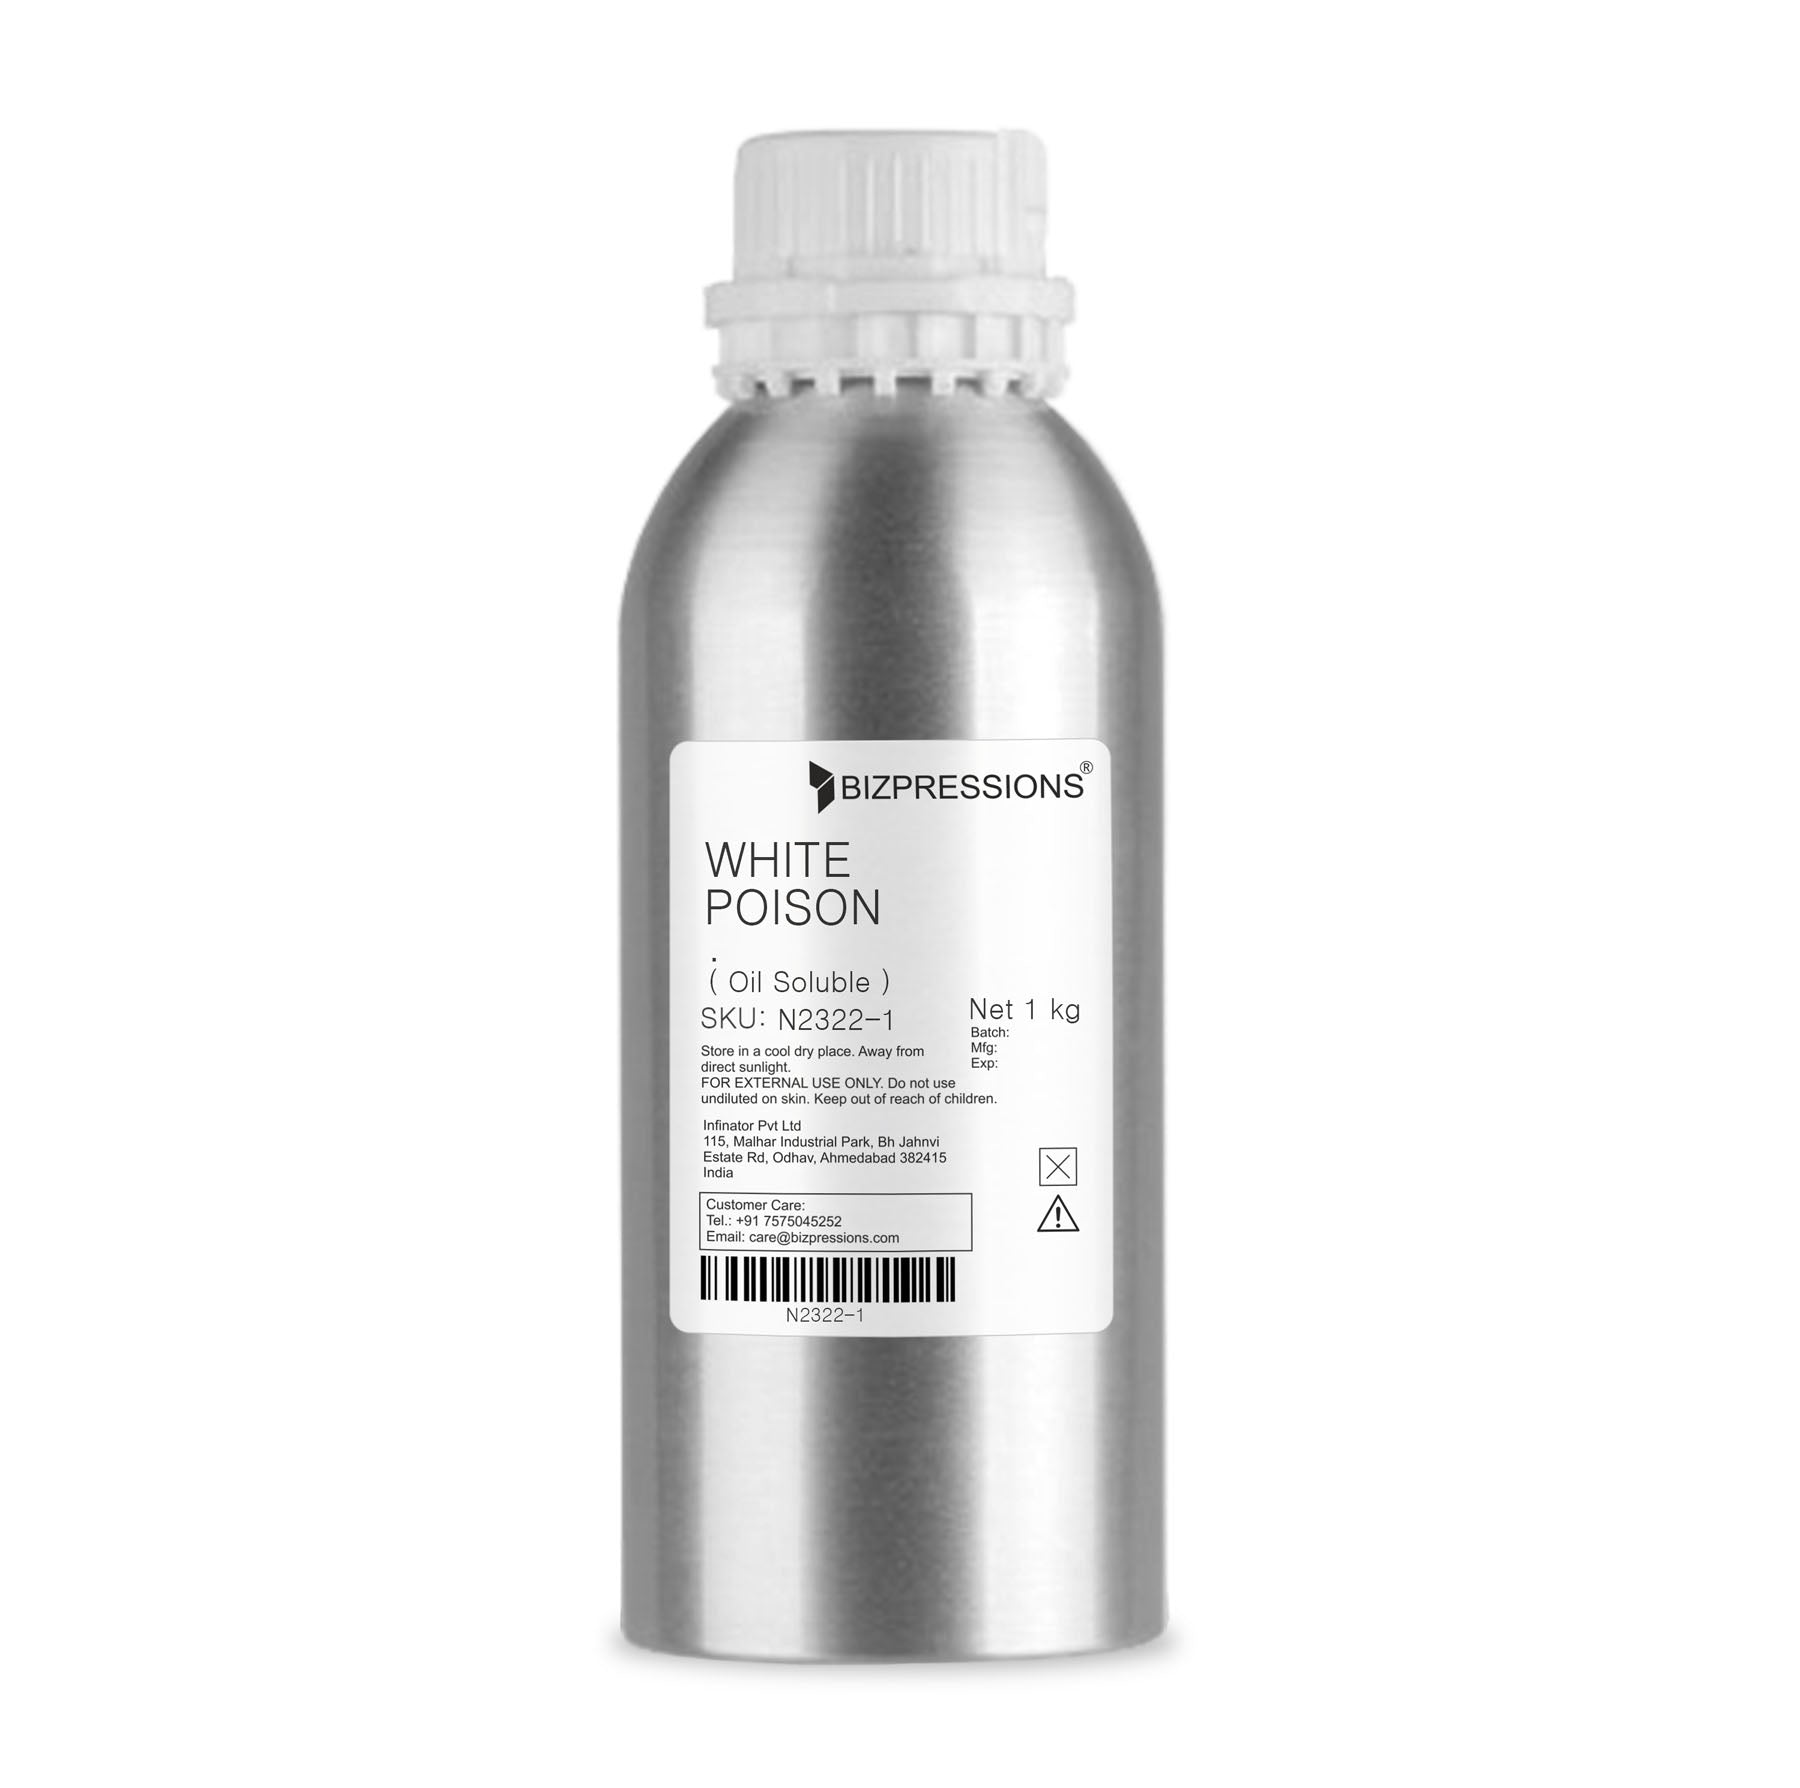 WHITE POISON - Fragrance ( Oil Soluble ) - 1 kg